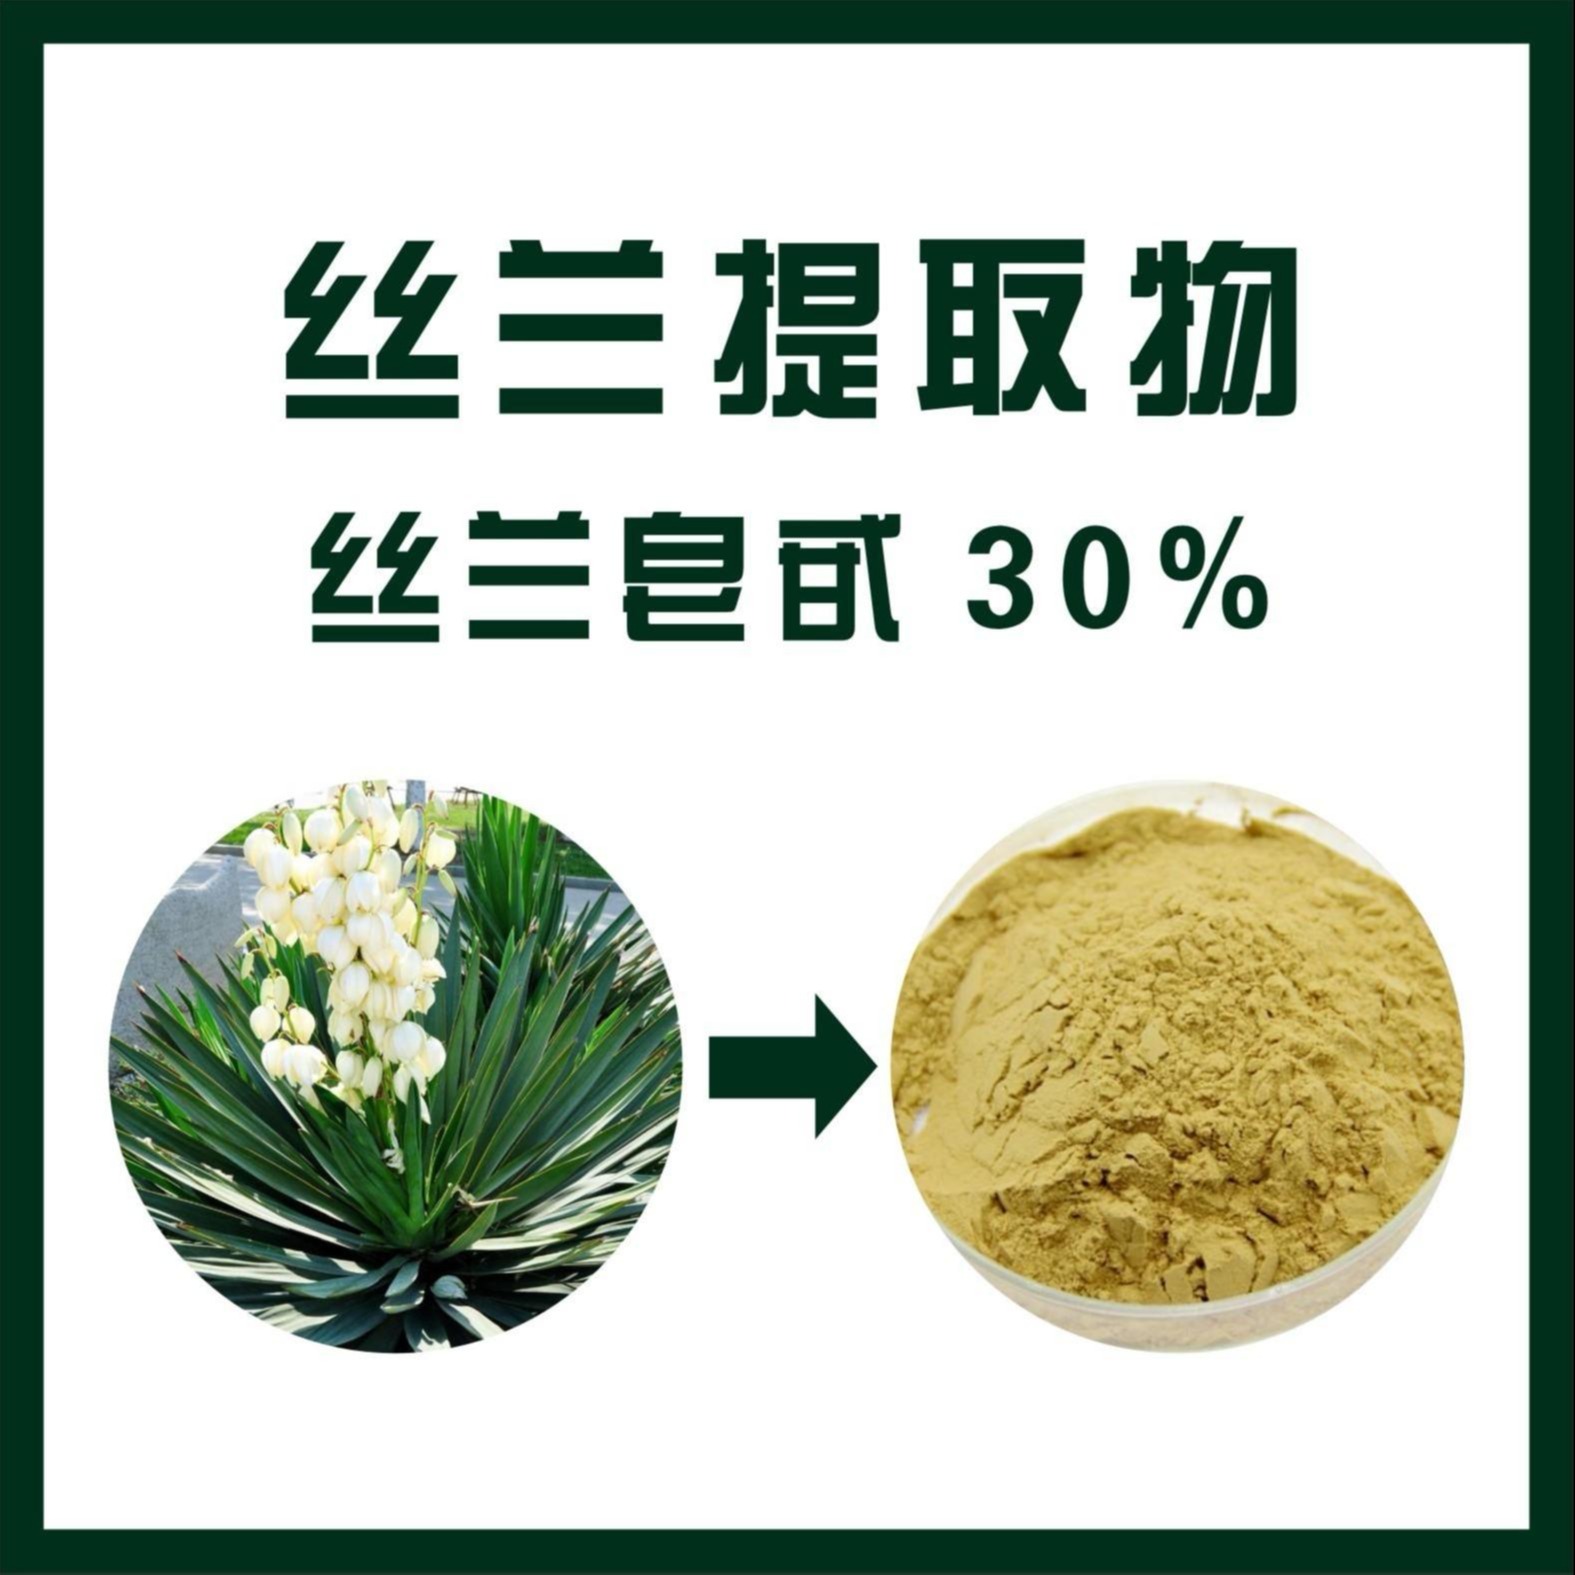 植物提取物 30% 提取物 丝兰皂甙 丝兰提取物 天域生物